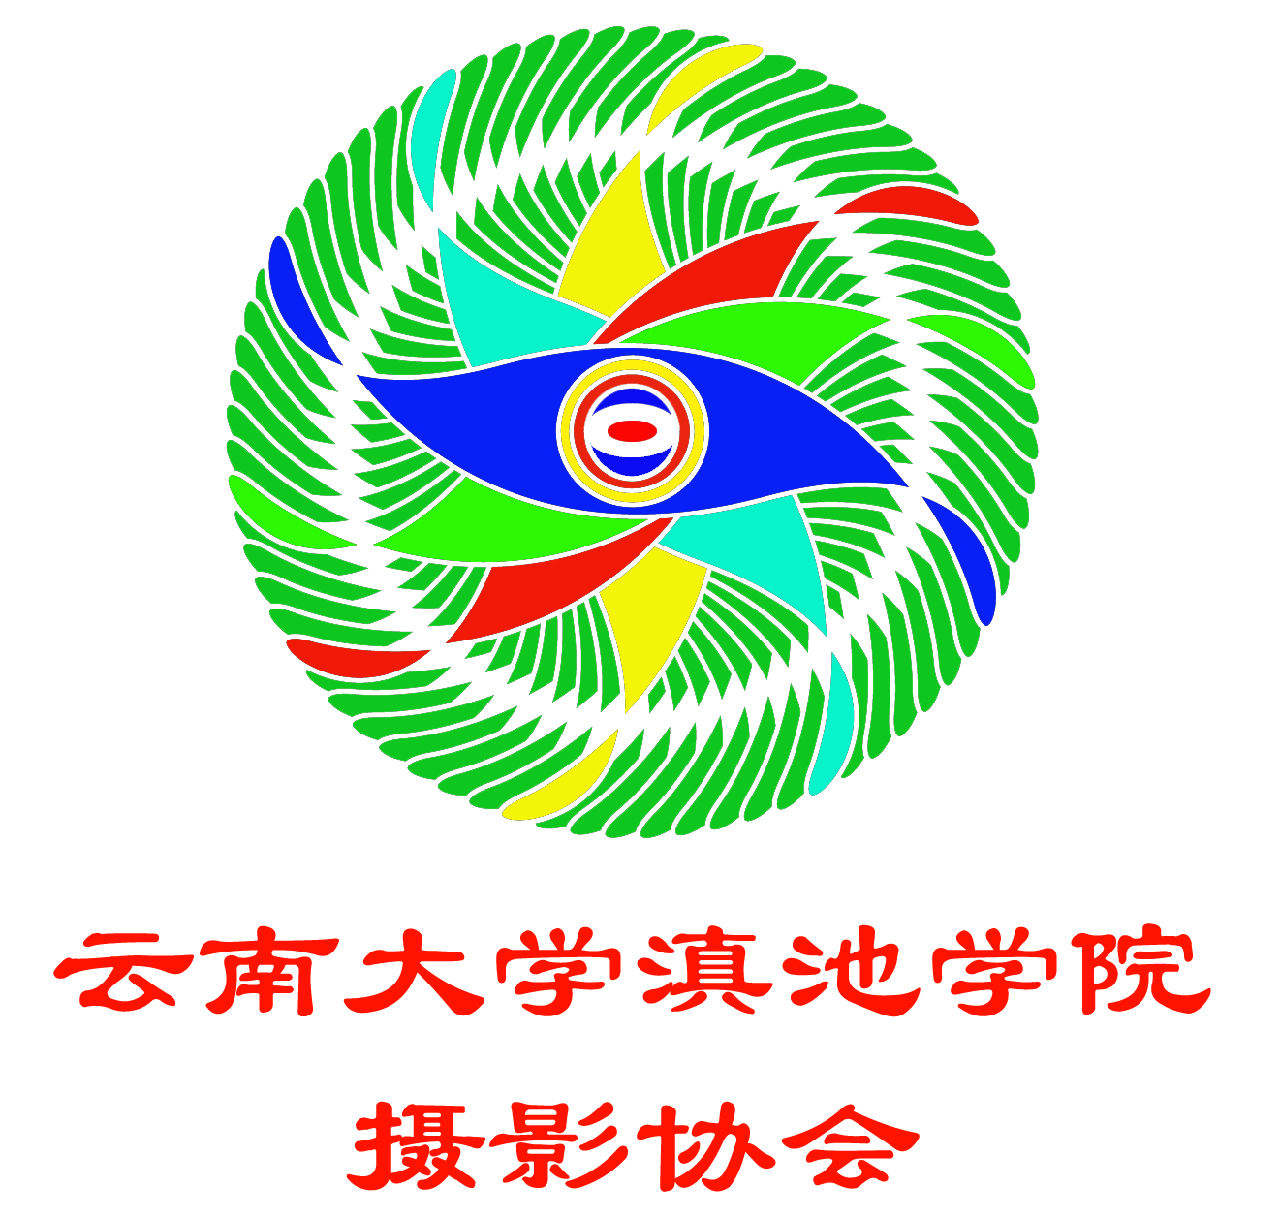 雲南大學滇池學院攝影協會會徽